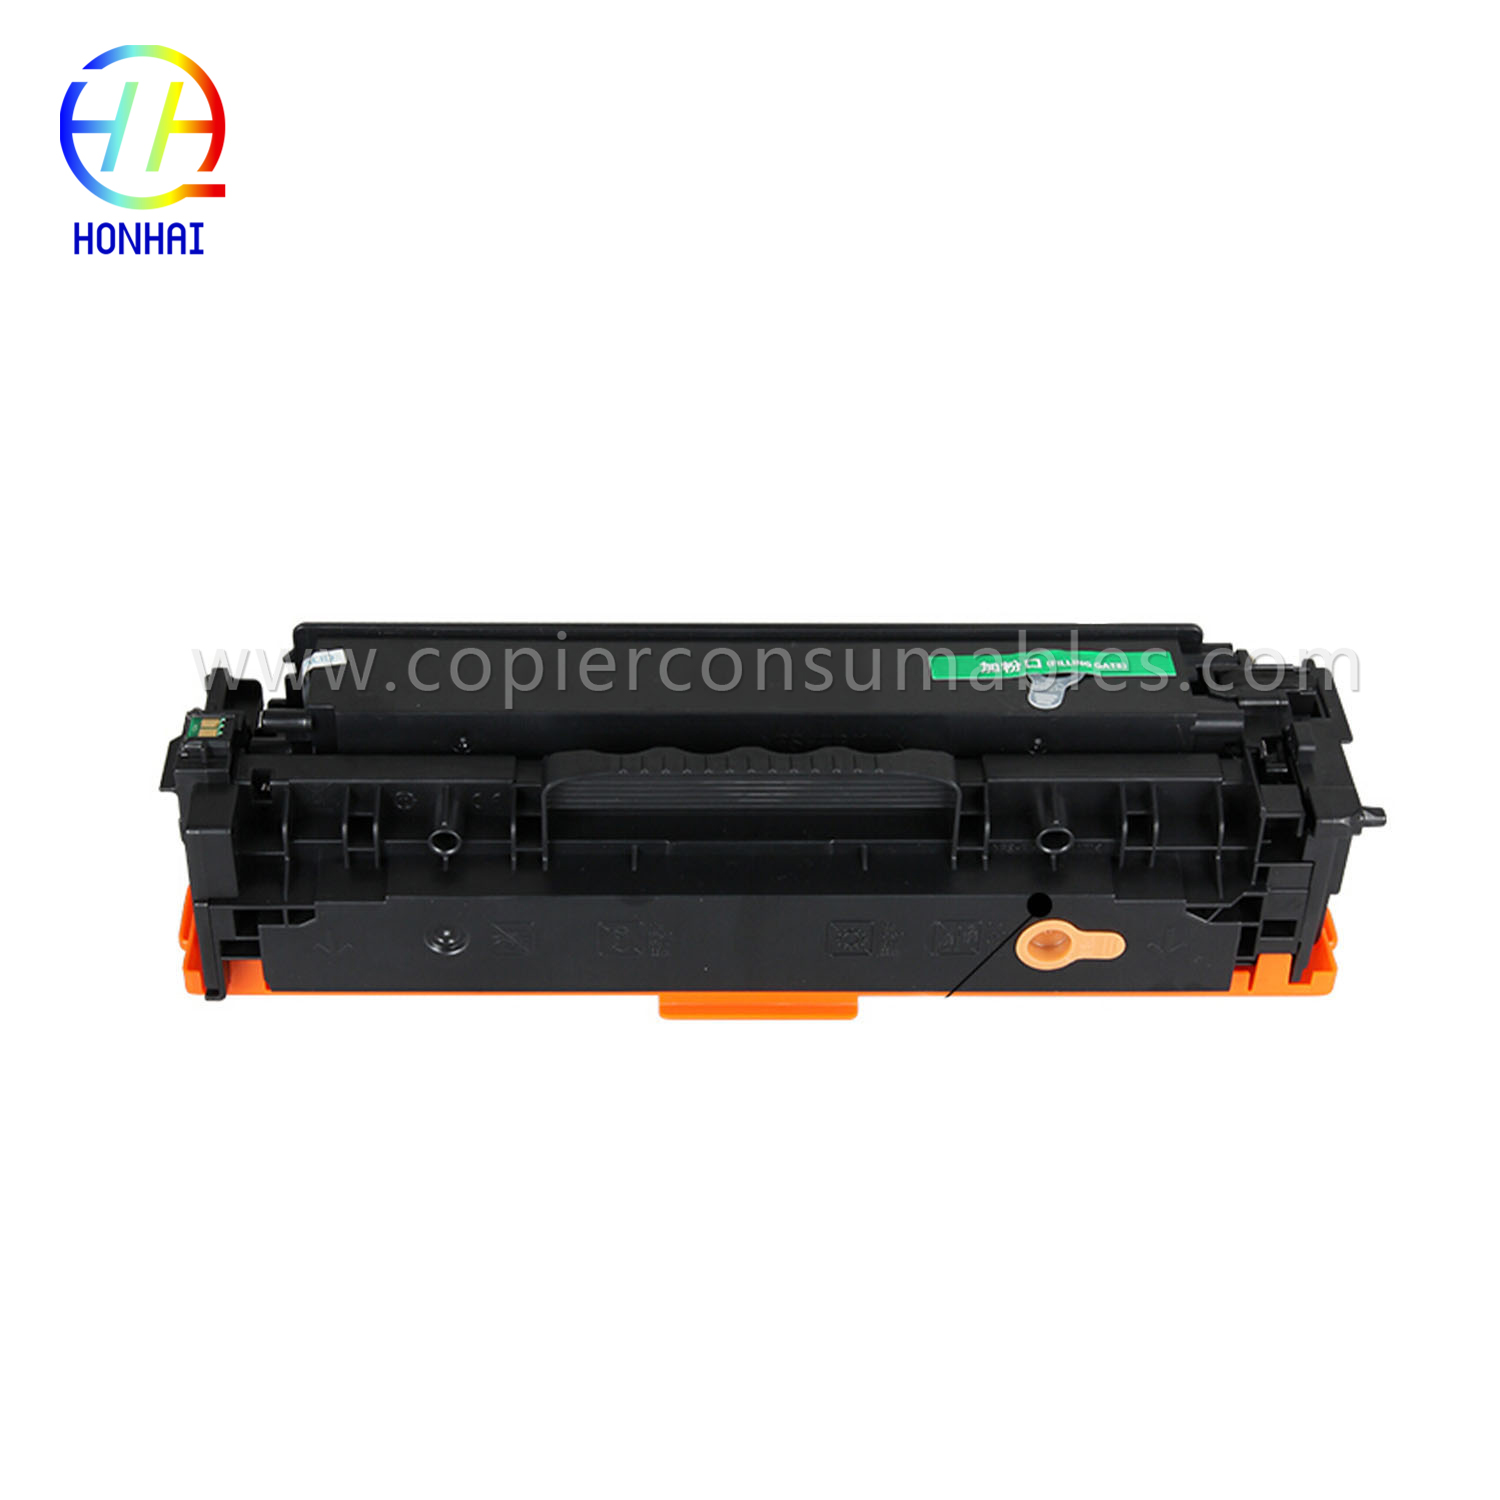 Hộp mực dùng cho máy in HP Laserjet PRO 400 Color Mfp M451nw M451DN M451dw PRO 300 Color Mfp M375nw (CE410A) 拷贝